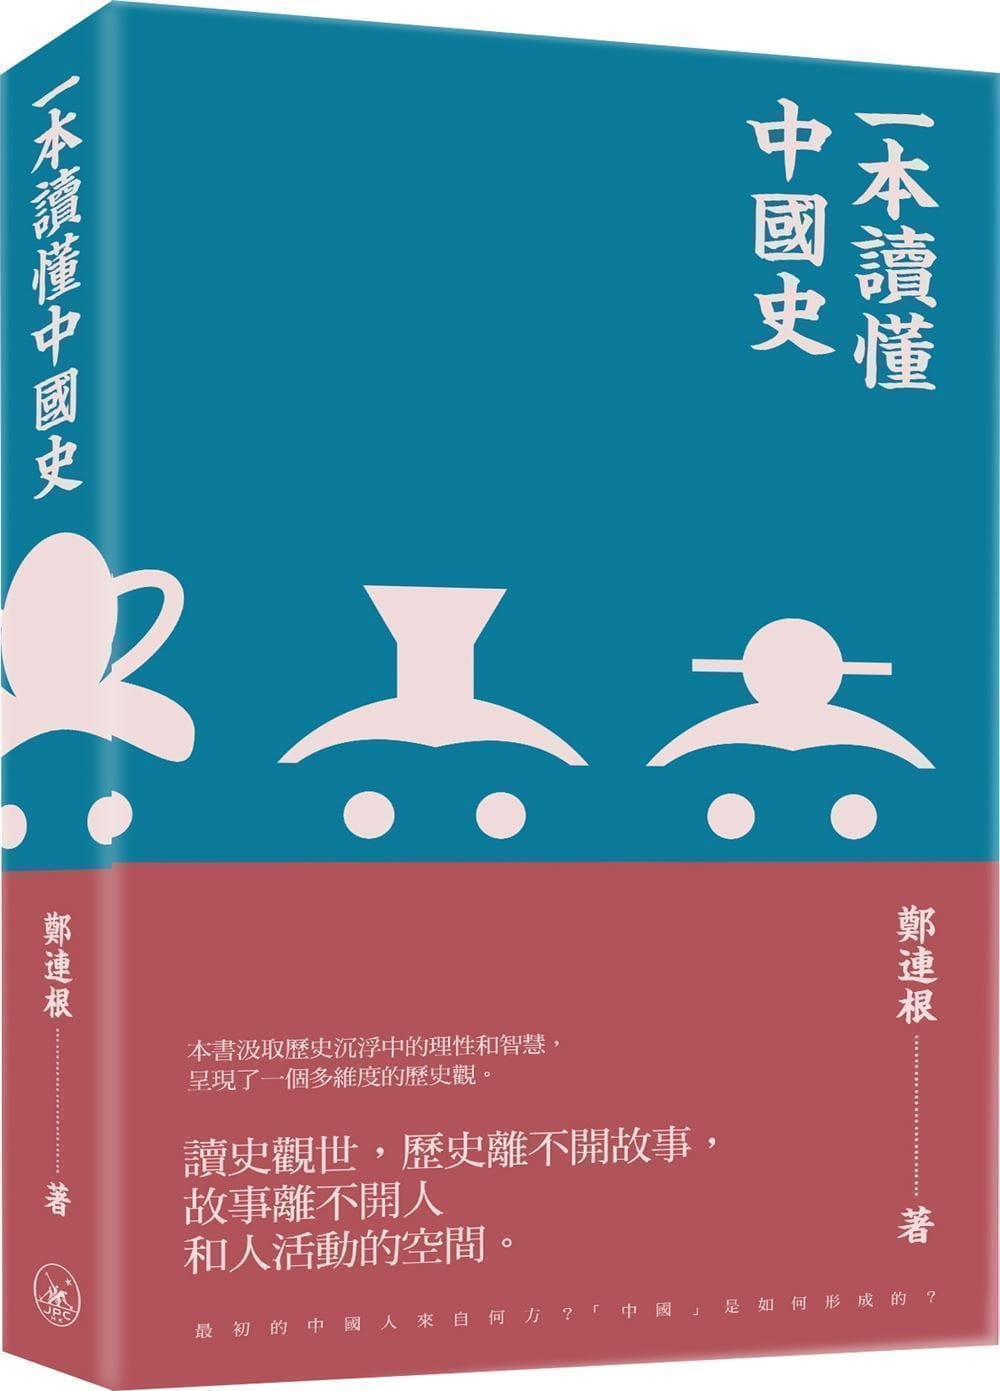 一本讀懂中國史